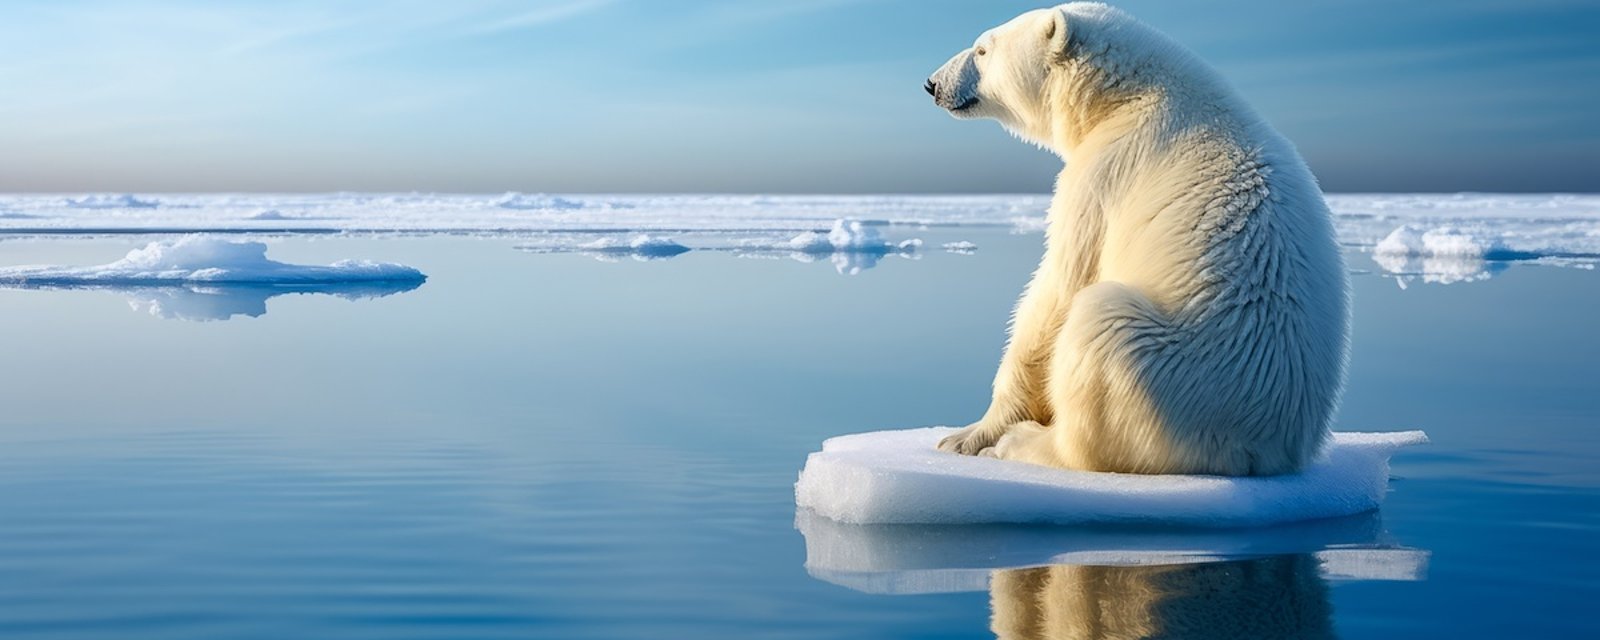 6 choses que vous ignorez peut-être au sujet de l'ours polaire